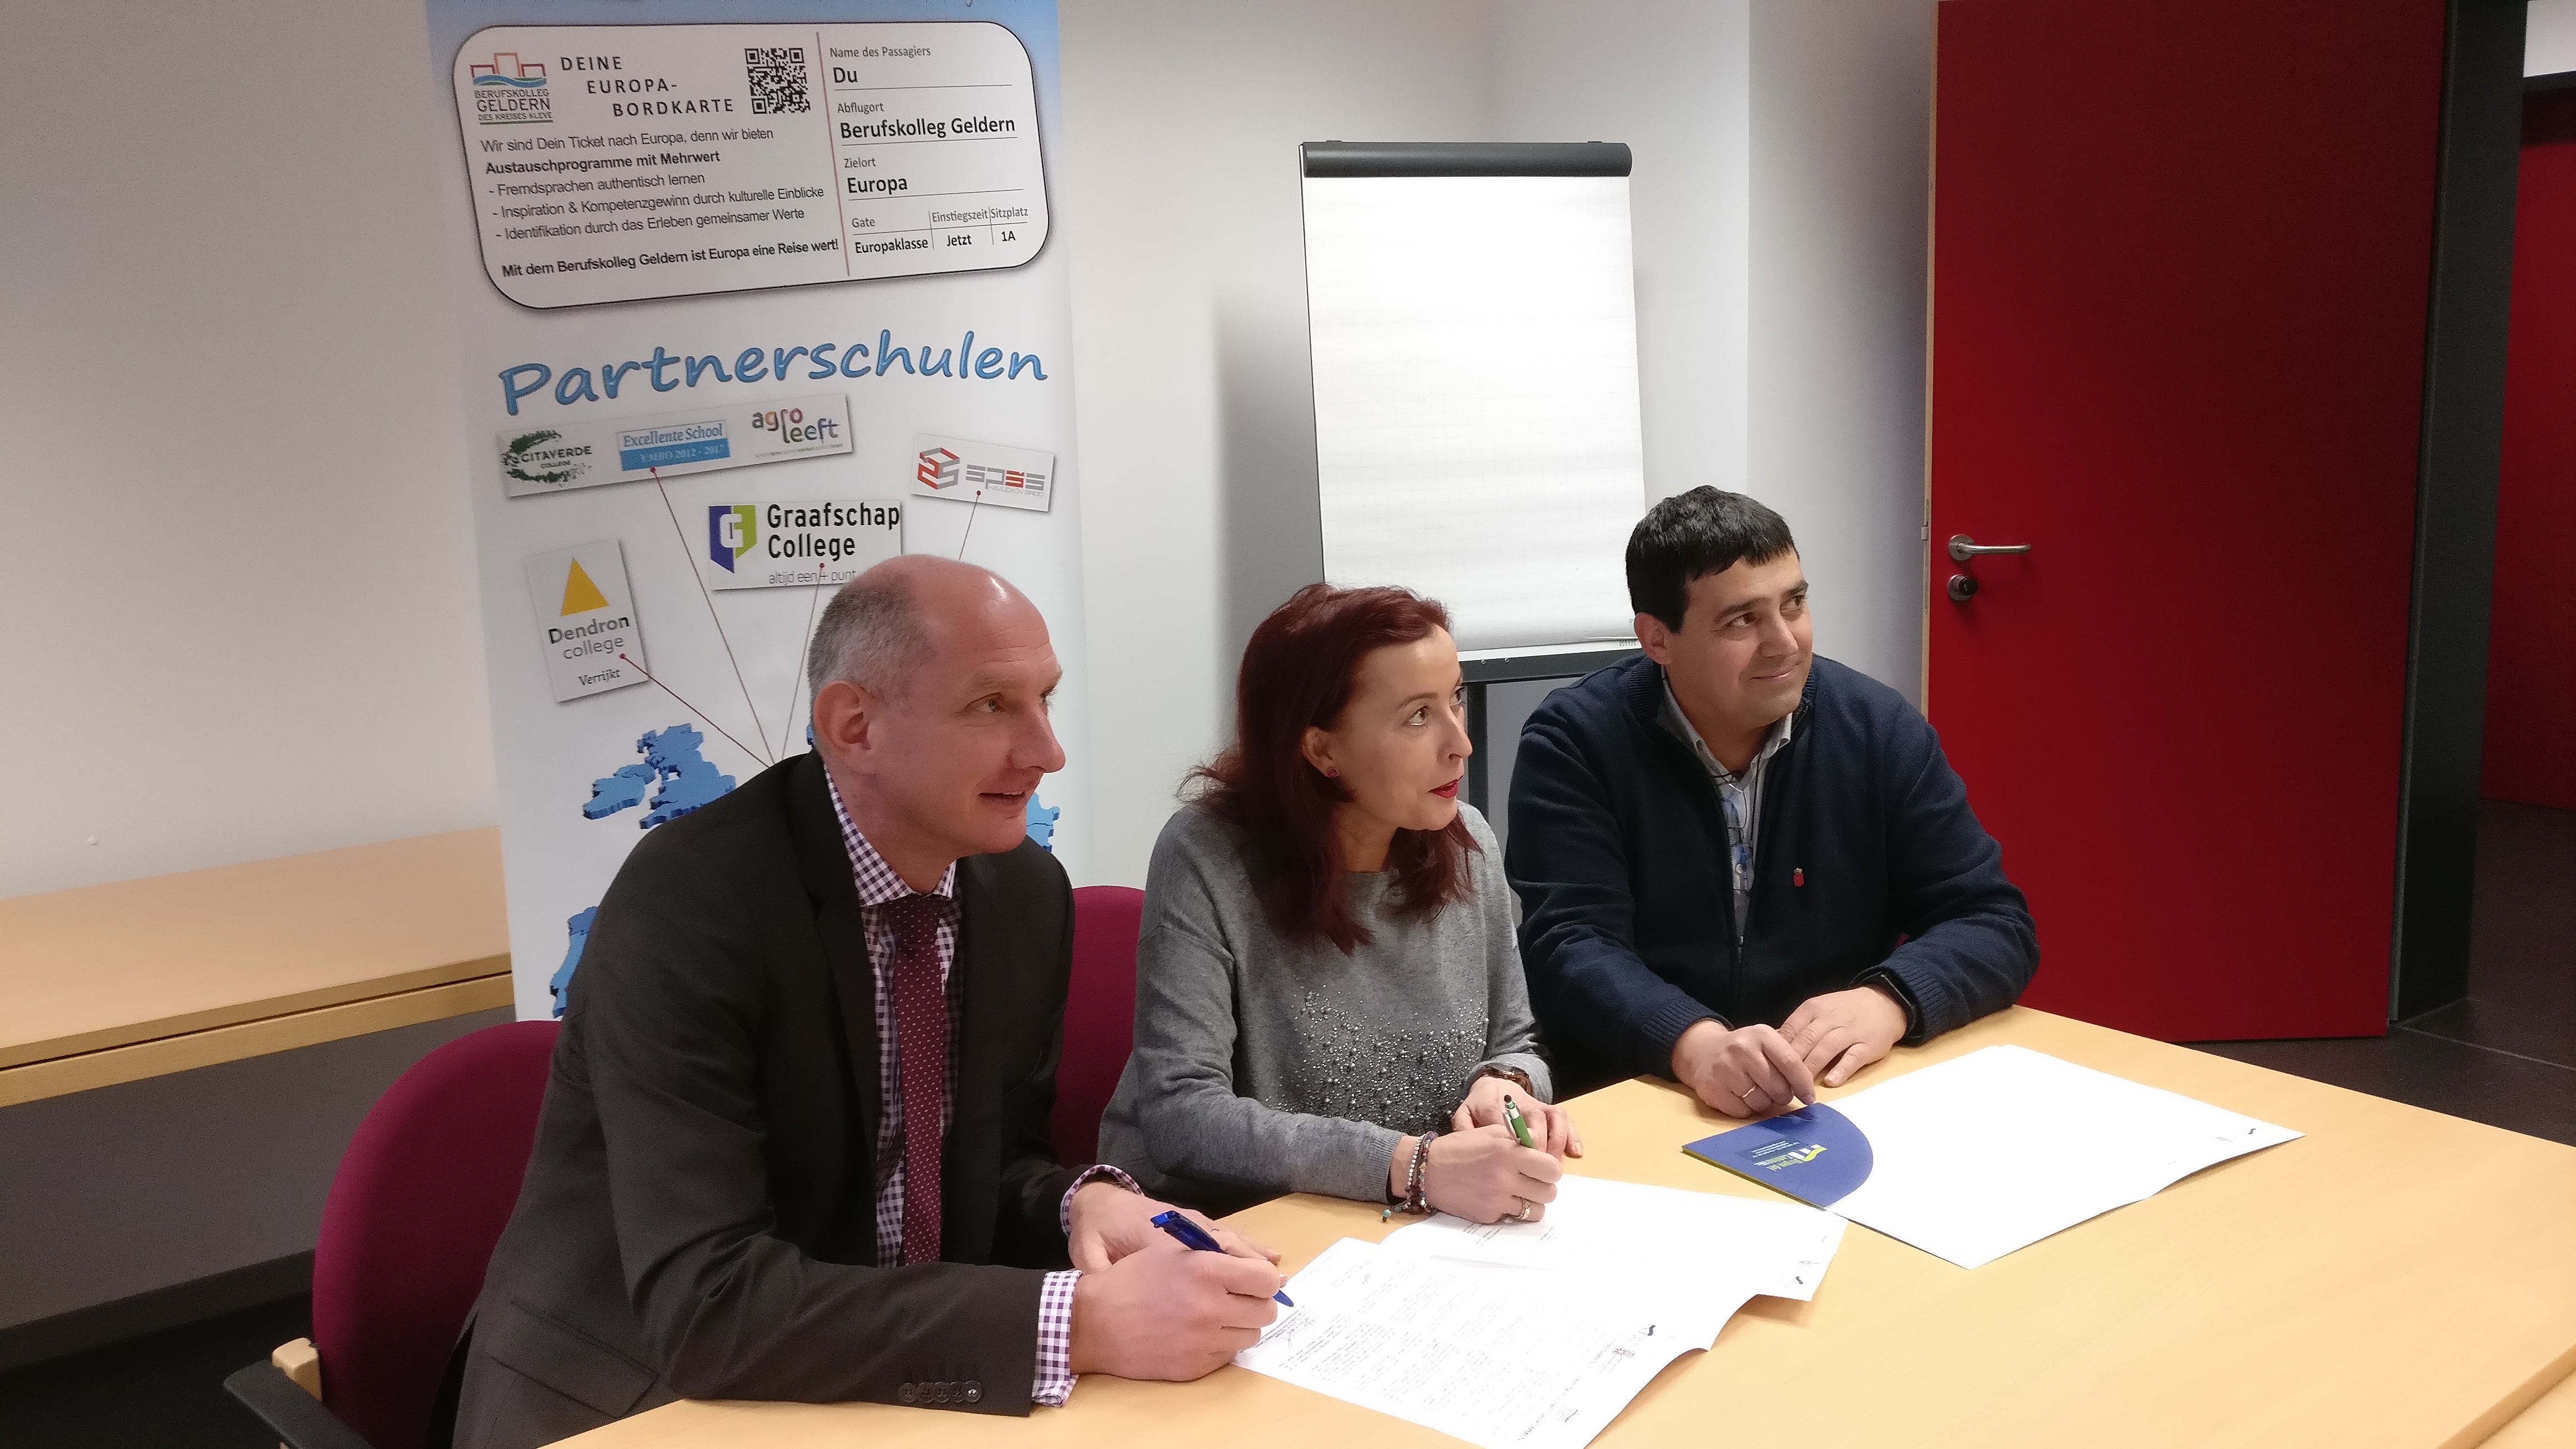 Dos centros integrados de FP navarros firman un acuerdo de colaboración con un centro de FP de Geldern, Alemania